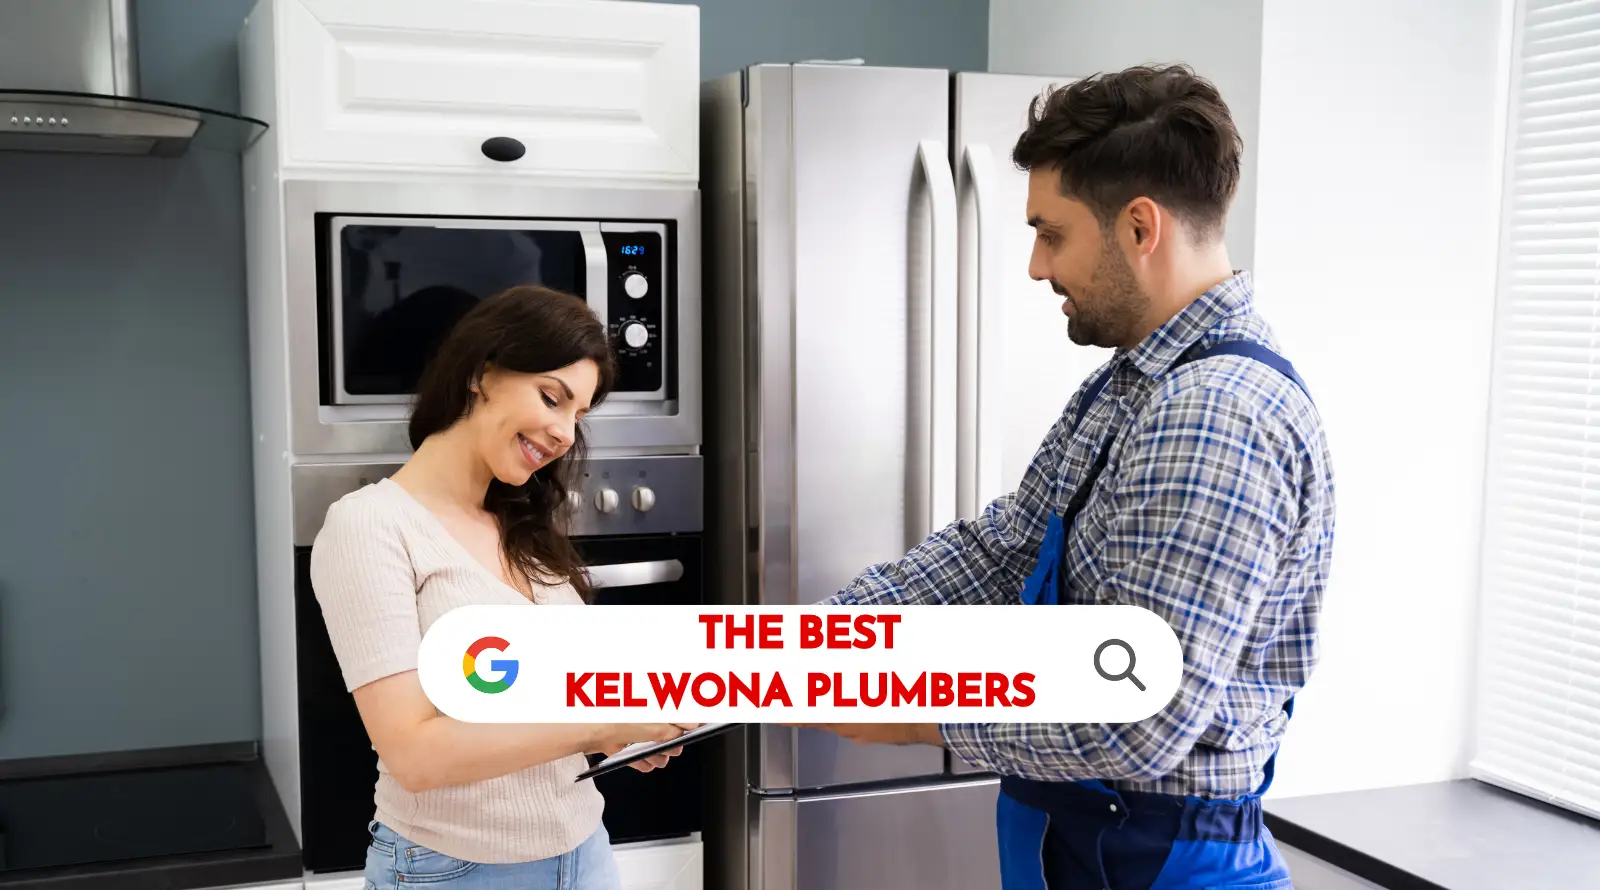 Best plumbers in Kelowna, BC